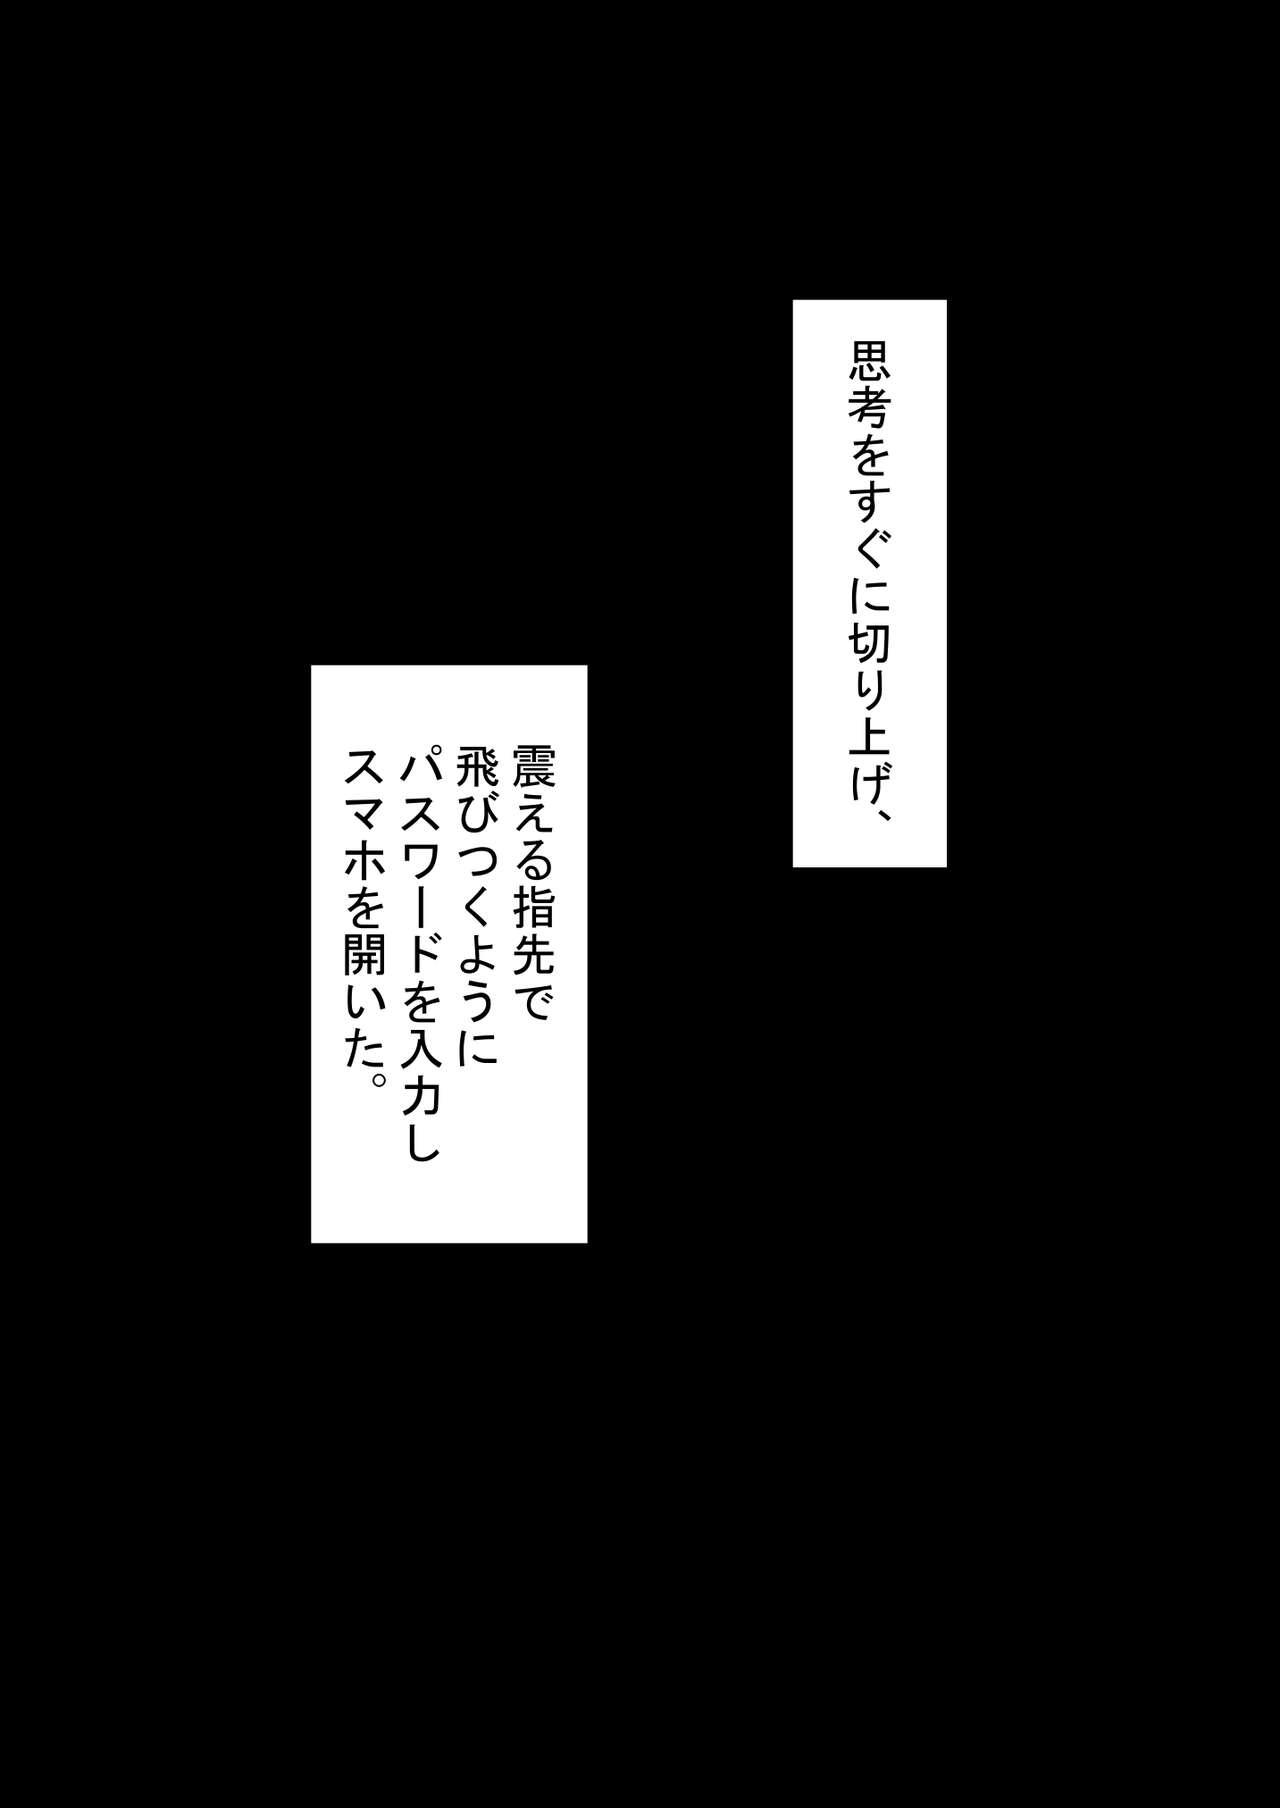 『kanojowa nerawareteiru』 honpen ～takeshipen～ 109